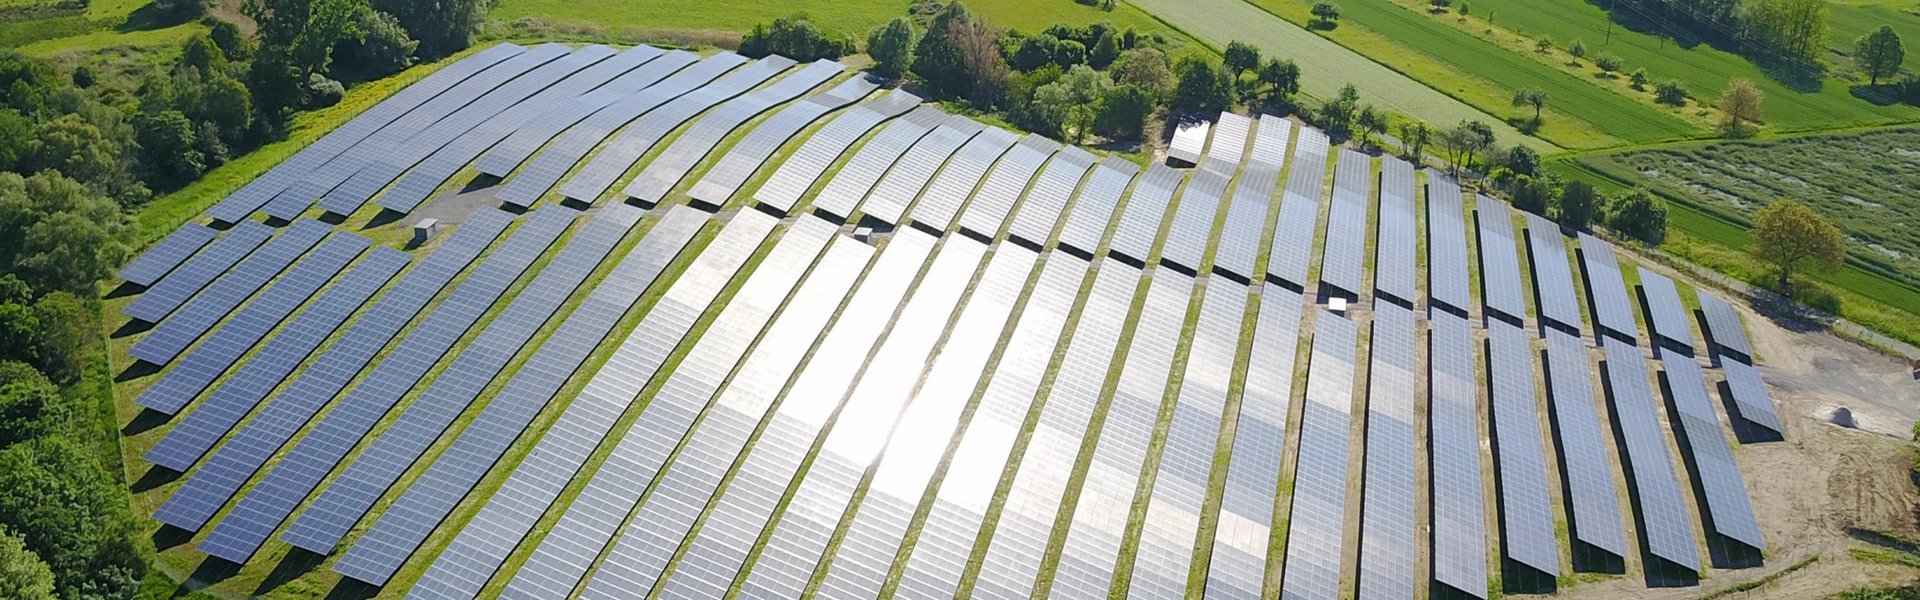 Solarmodule des Solarparks in Malsch aus der Vogelperspektive